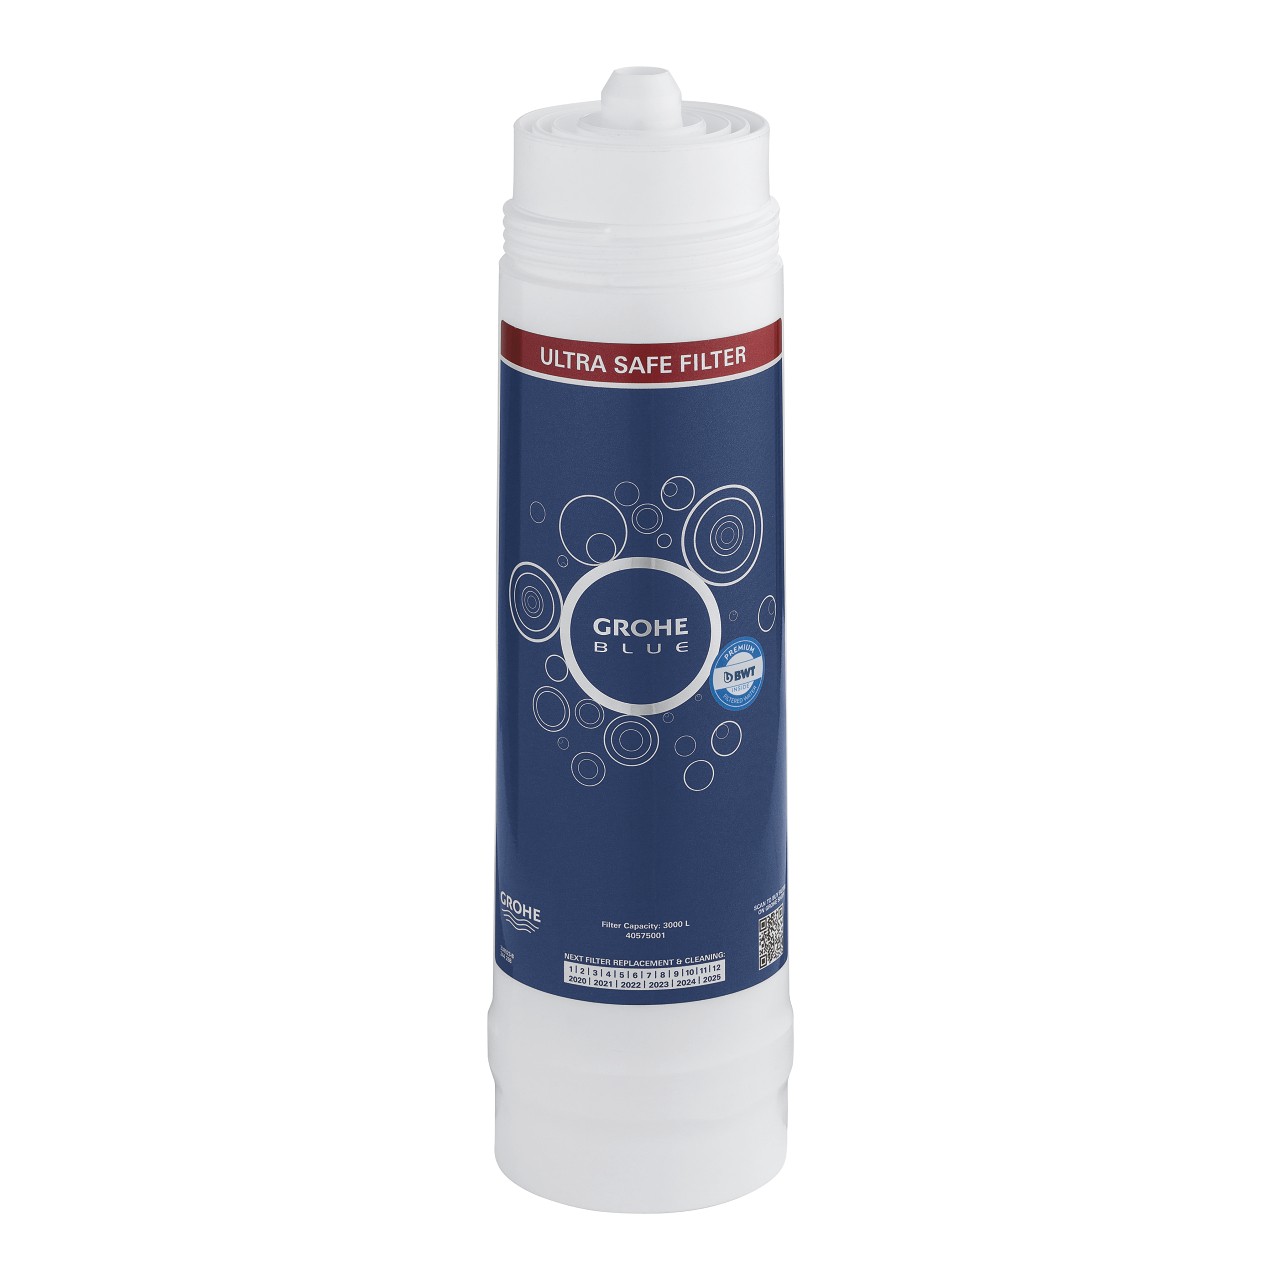 Grohe Blue Ultrasafe filtro a 2 fasi per sistemi Grohe Blue Home, Professional e Pure - 40575001